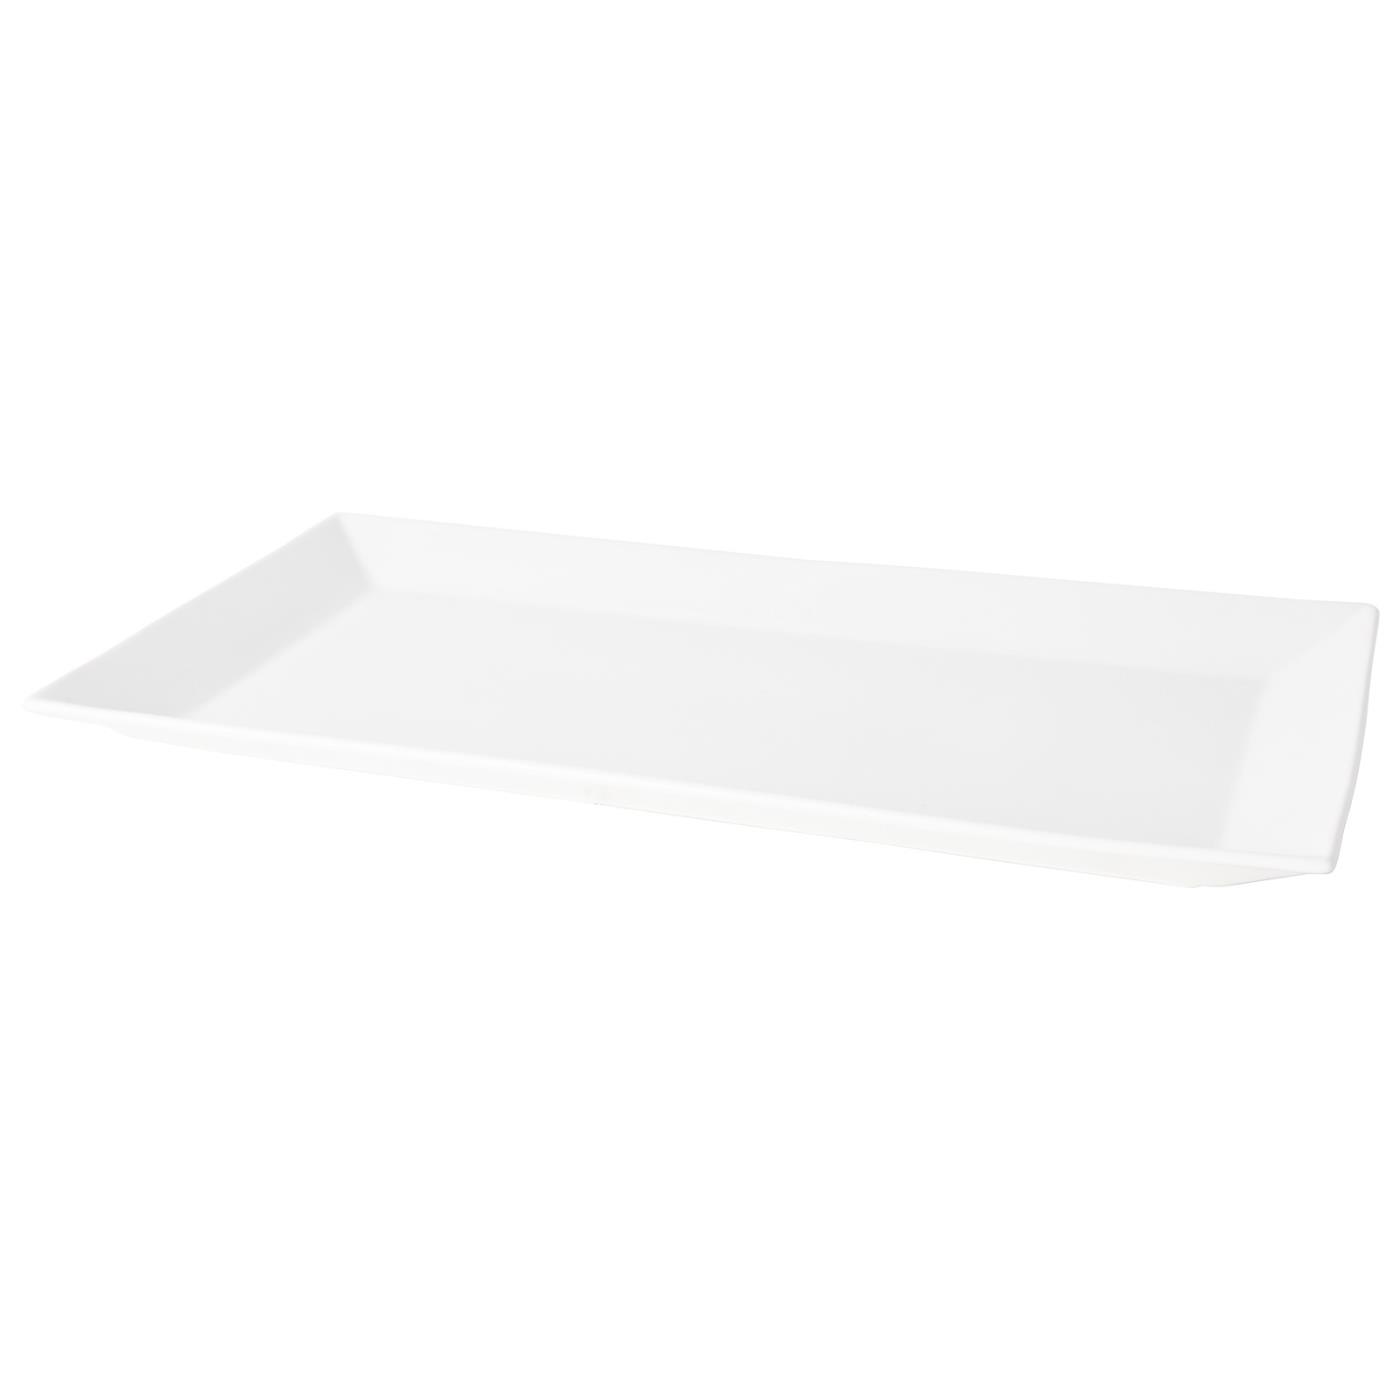 White Ceramic Rectangular Platter - 10.5" x 20"